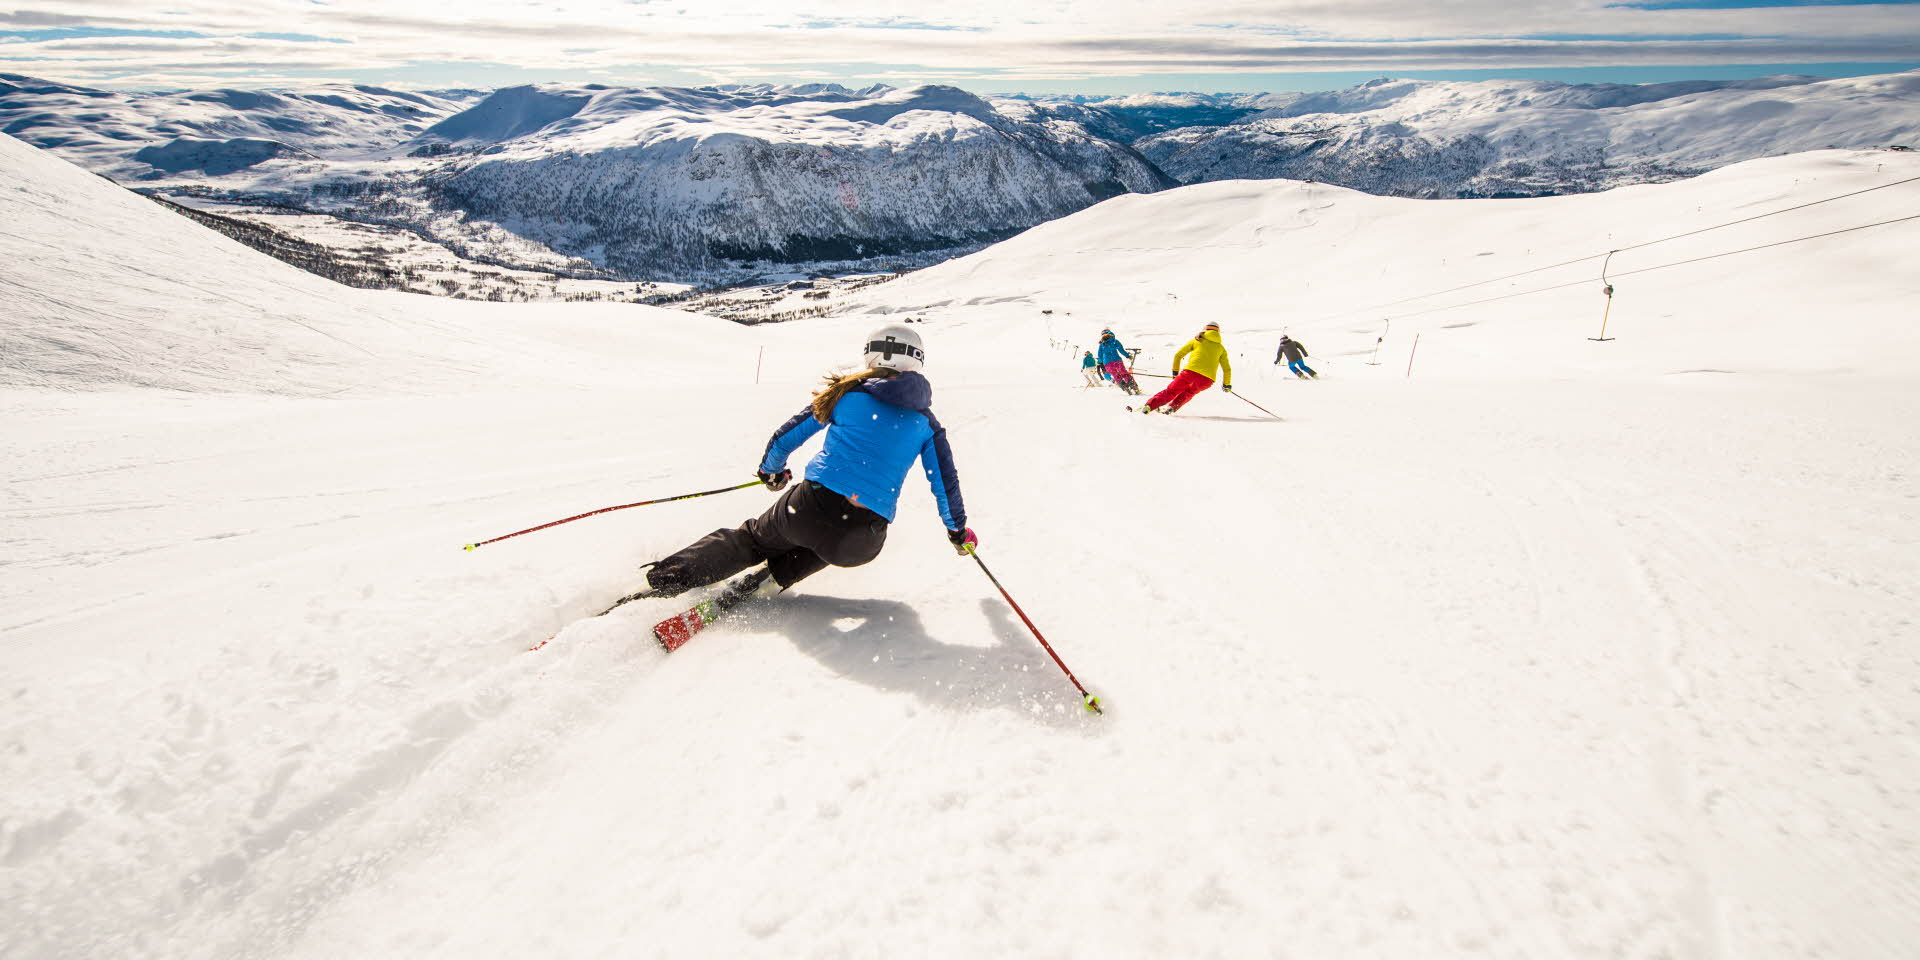 Jenter på ski i Myrkdalen, med utsikt til snøkledde fjell.